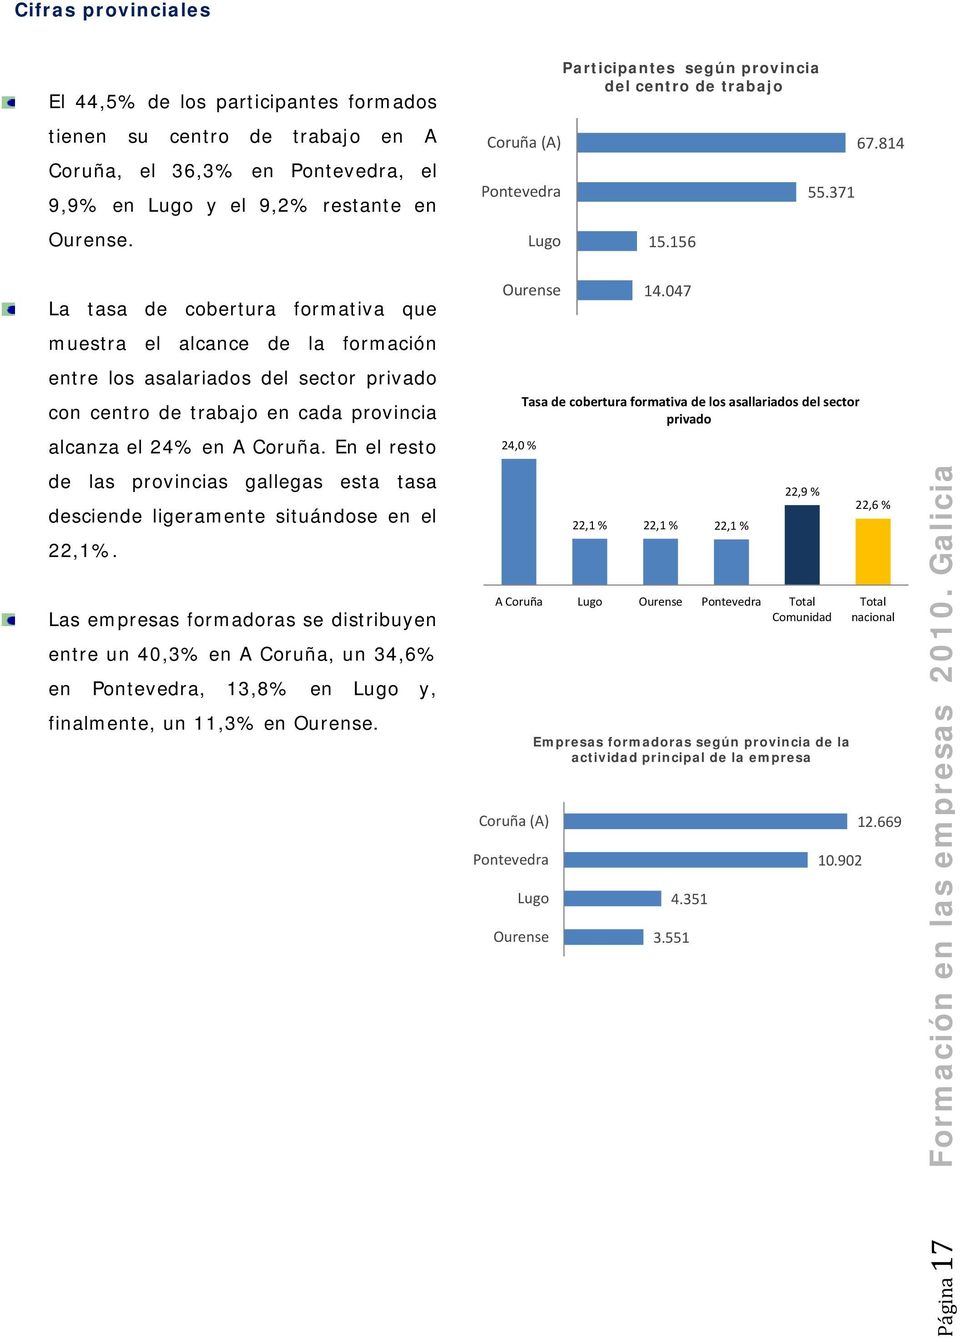 814 La tasa de cobertura formativa que muestra el alcance de la formación entre los asalariados del sector privado con centro de trabajo en cada provincia alcanza el 24% en A Coruña.